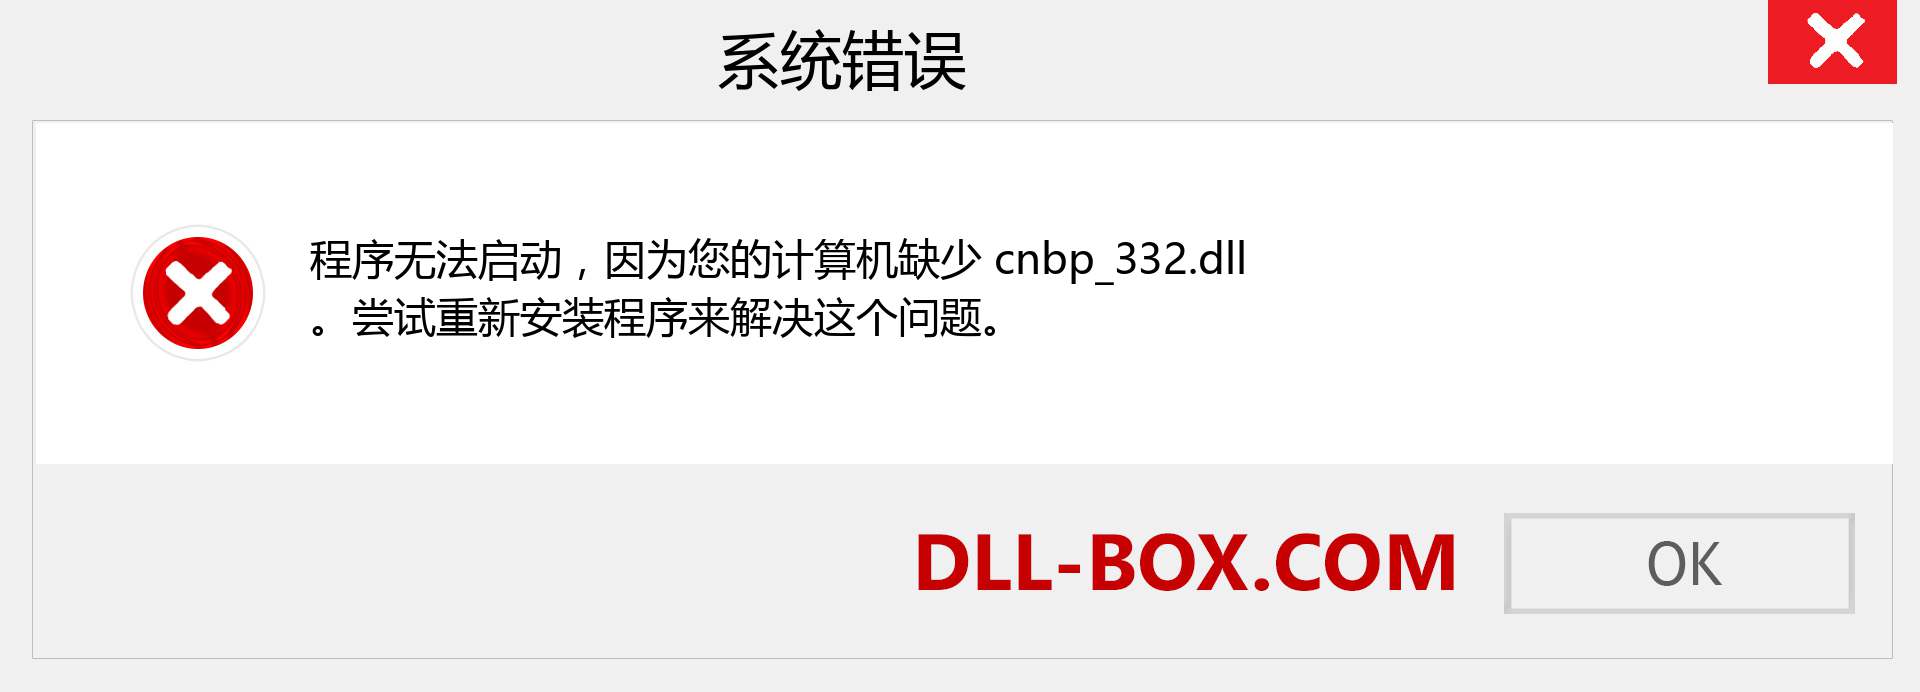 cnbp_332.dll 文件丢失？。 适用于 Windows 7、8、10 的下载 - 修复 Windows、照片、图像上的 cnbp_332 dll 丢失错误